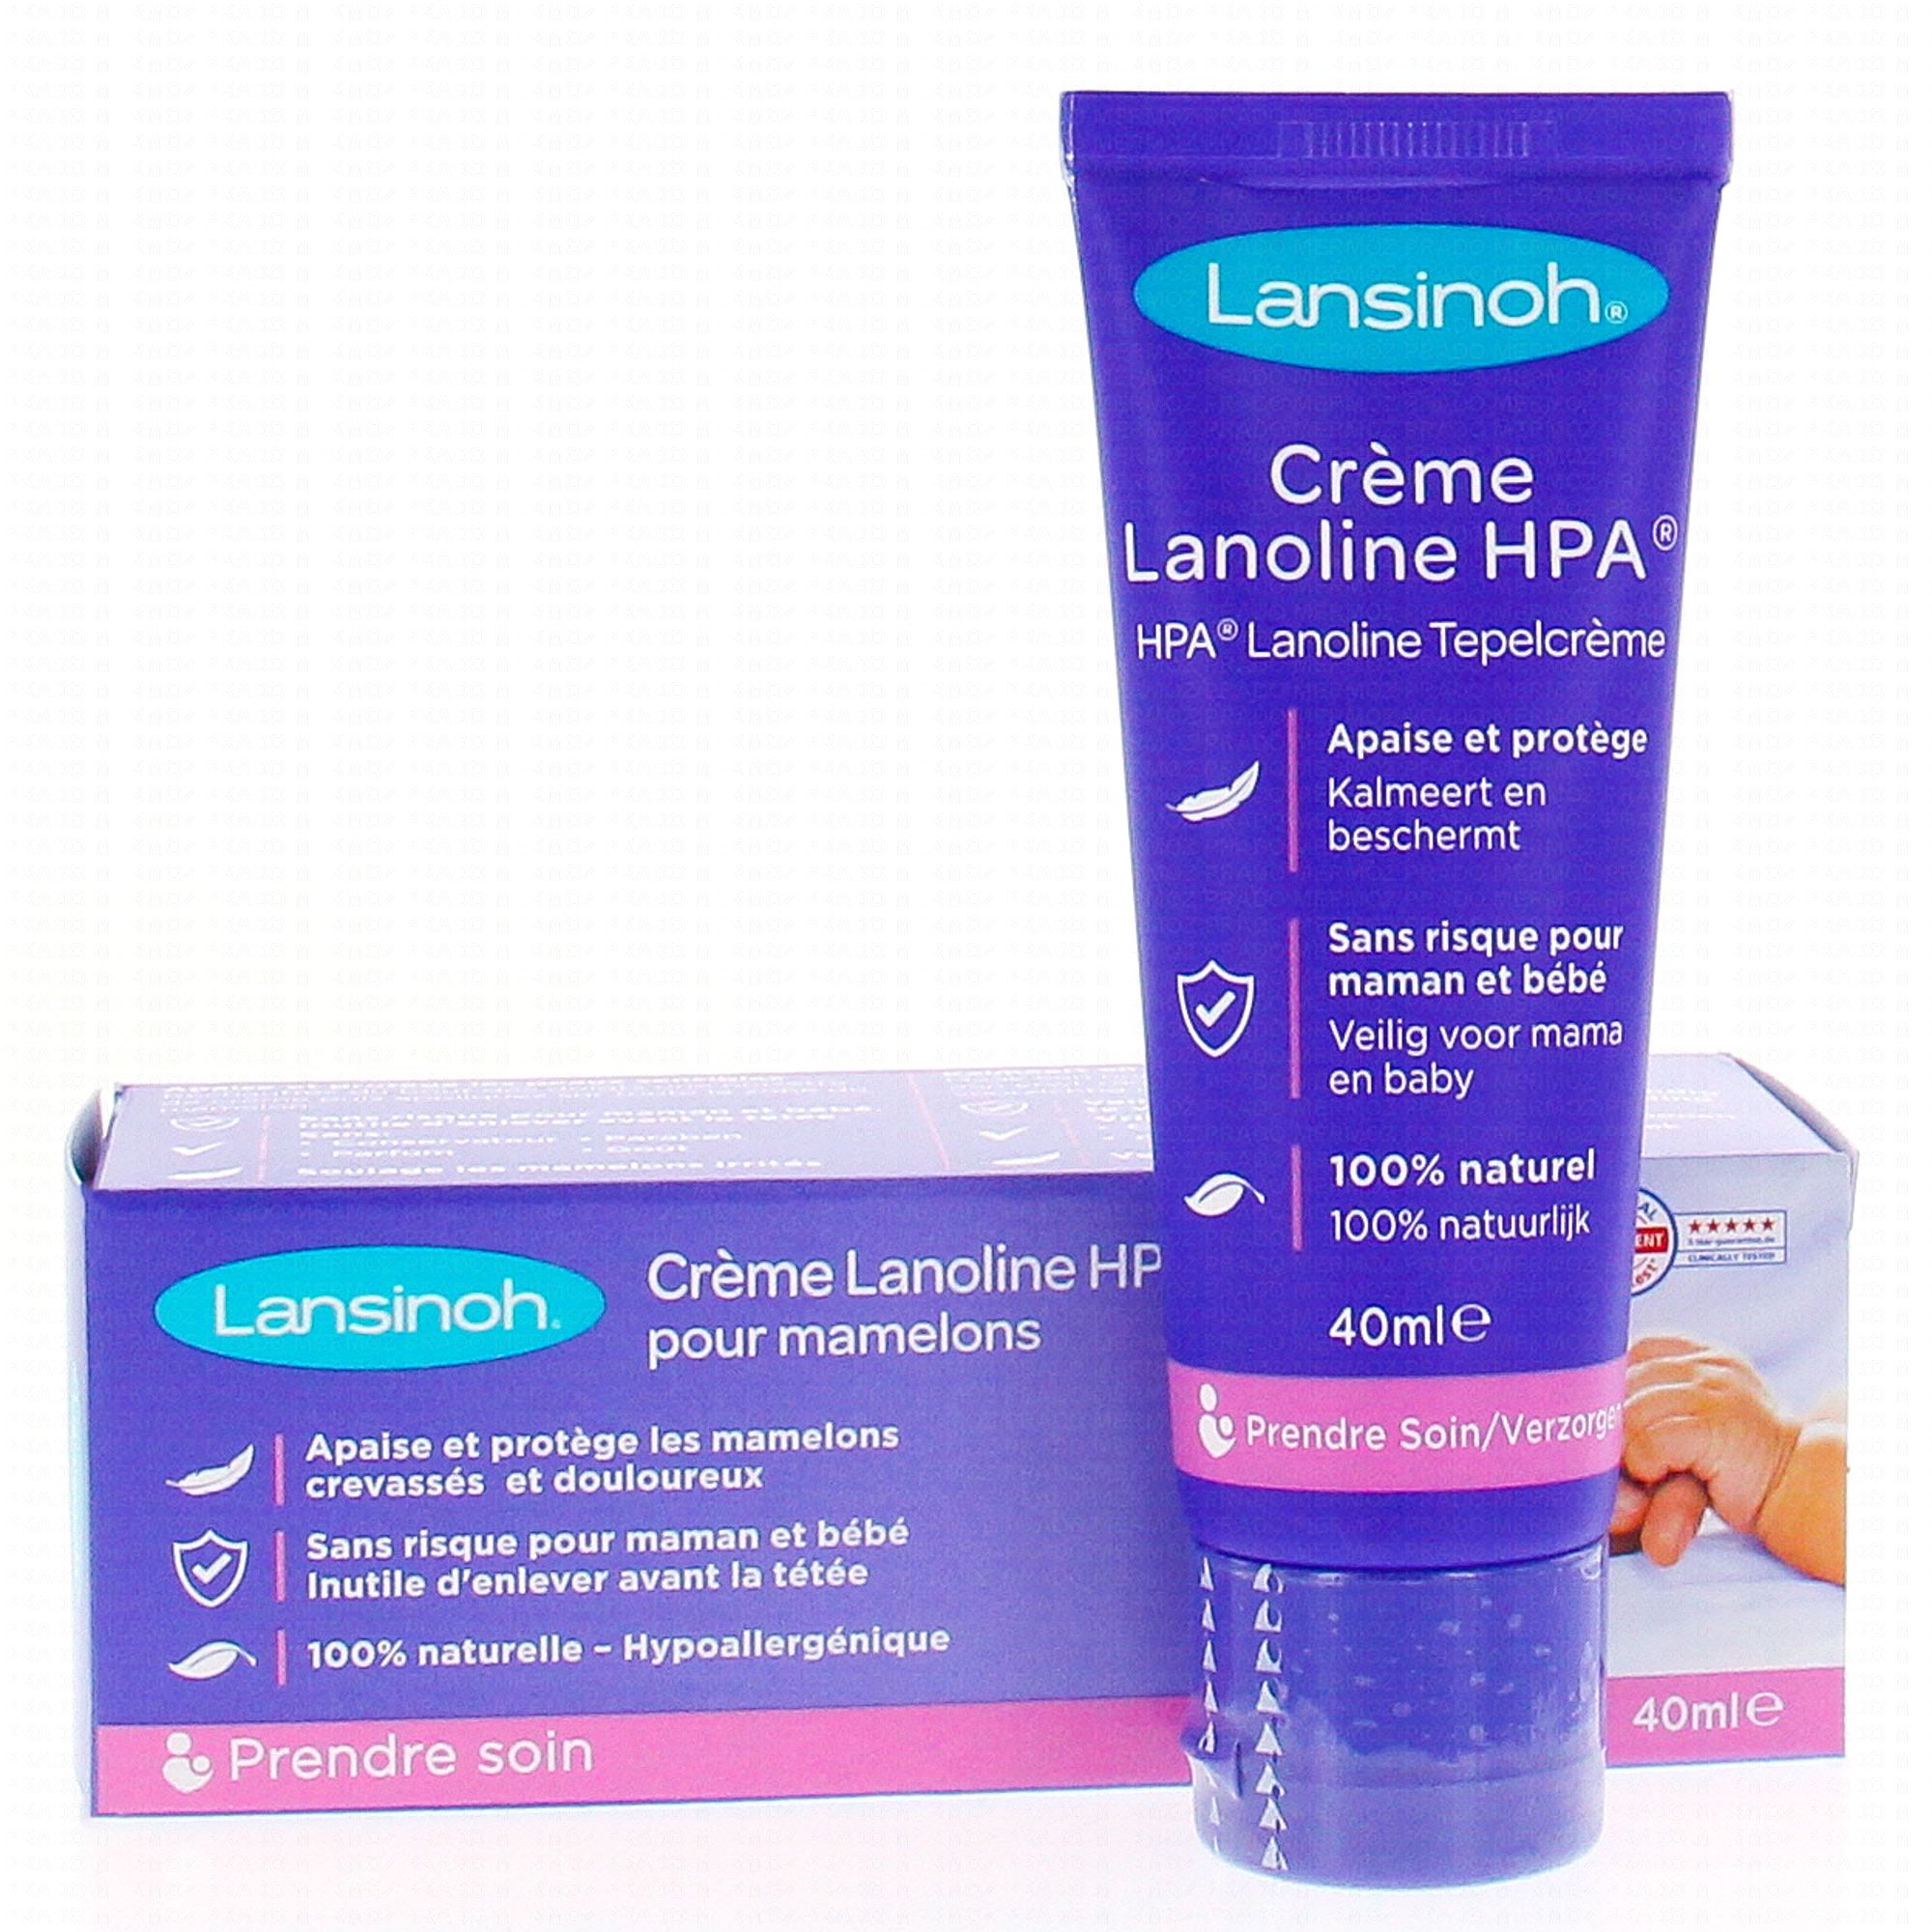 Creme Lanoline anti crevasse - Lanoline